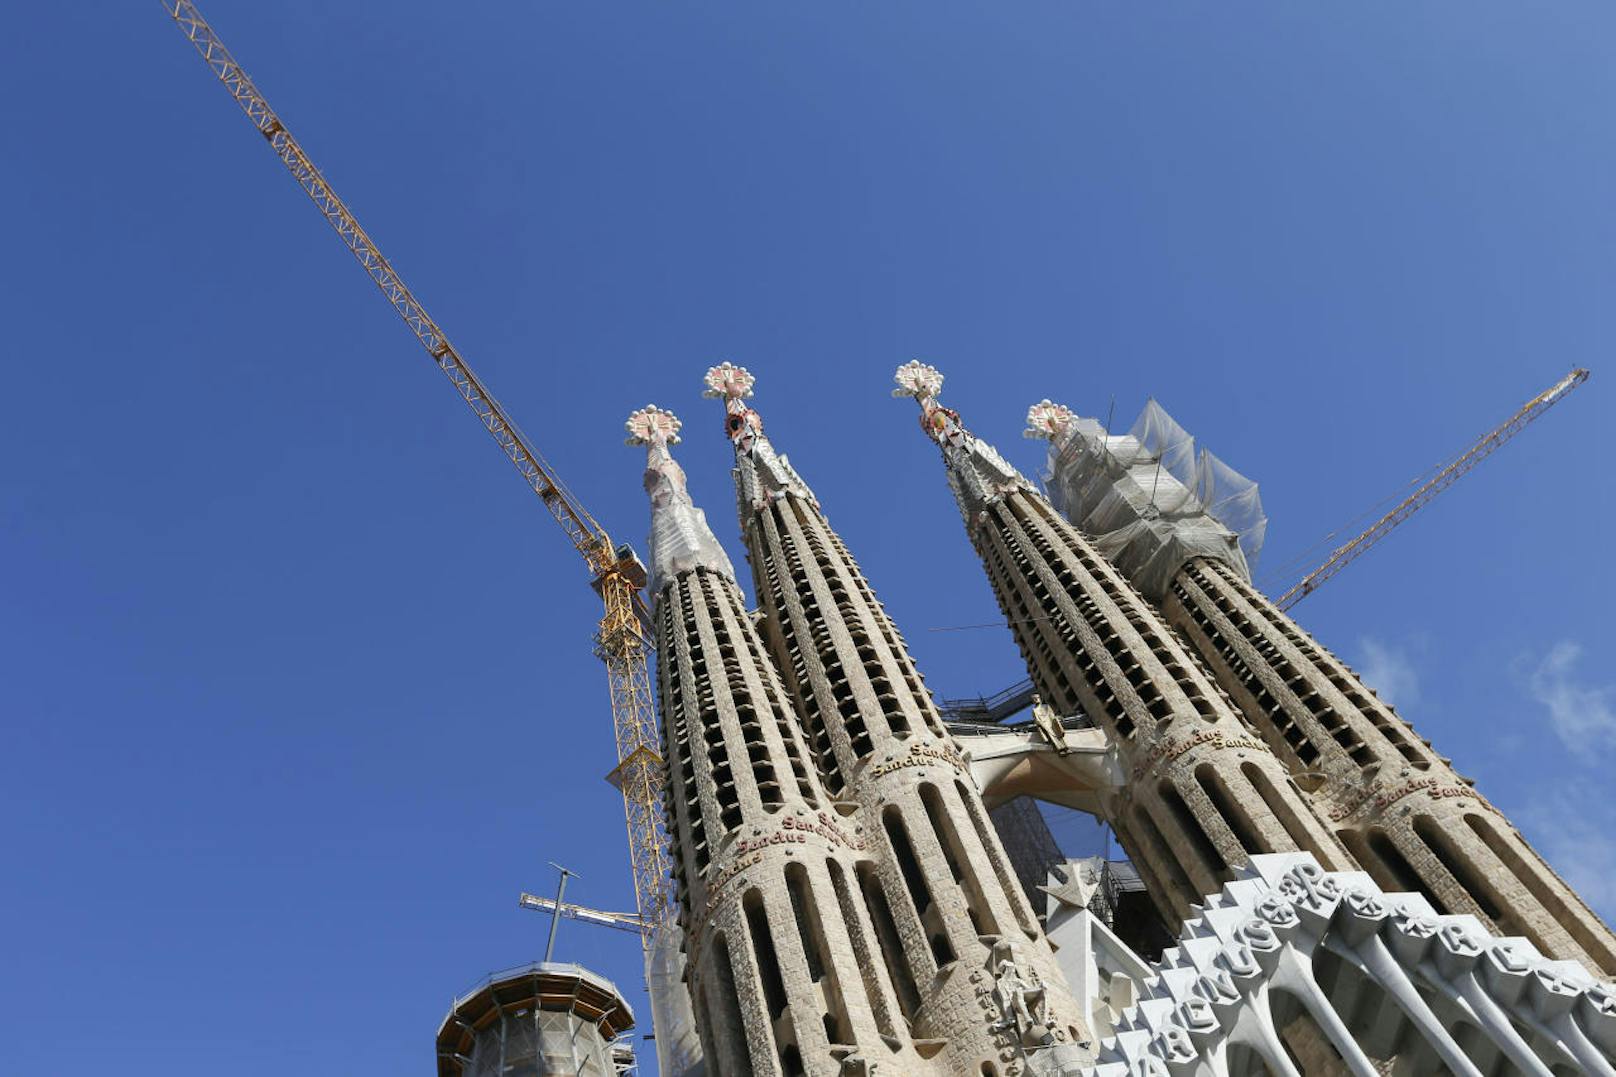 2005 nahm die UNESCO die Geburtsfassade, die Apsisfassade und die Krypta der Sagrada Familia als Erweiterung des Weltkulturerbedenkmals Arbeiten von Antoni Gaudí in ihre Liste des Weltkulturerbes auf.